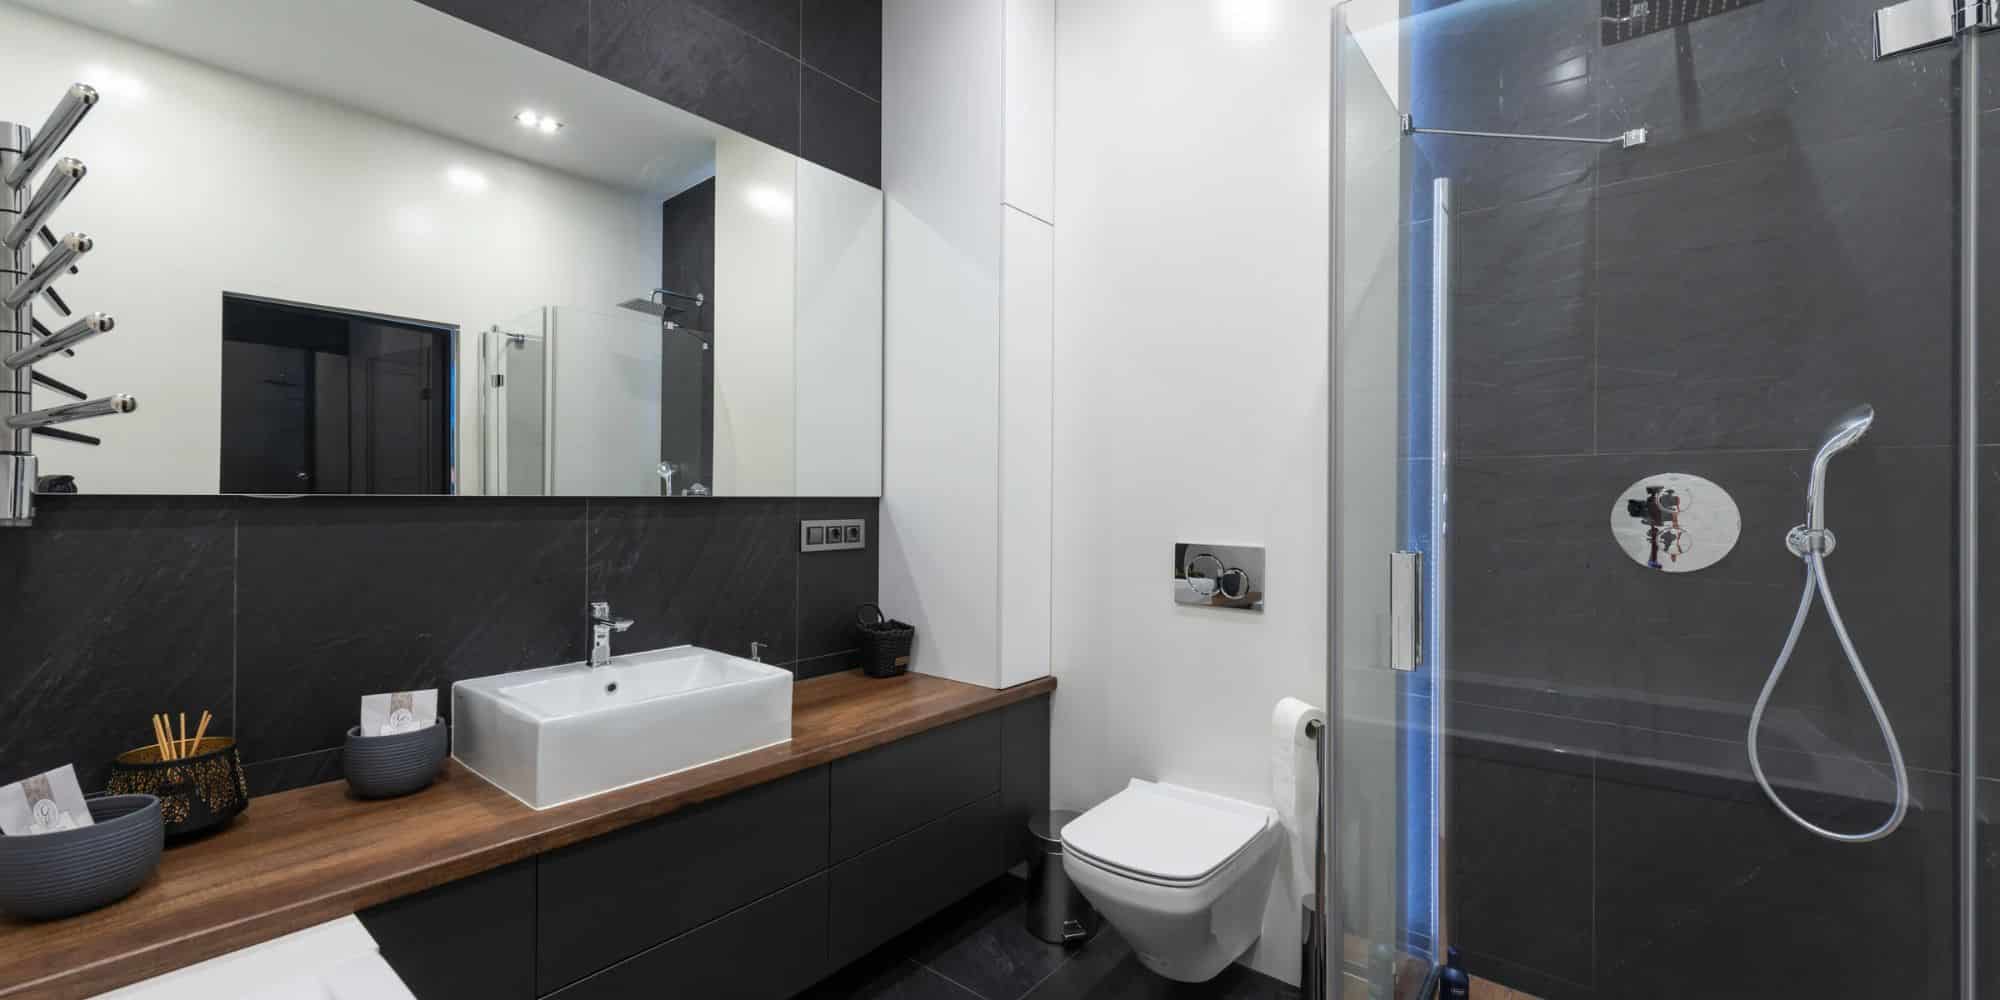 Toaleta cu bideu Smart: confort și igienă avansată pentru baia ta modernă